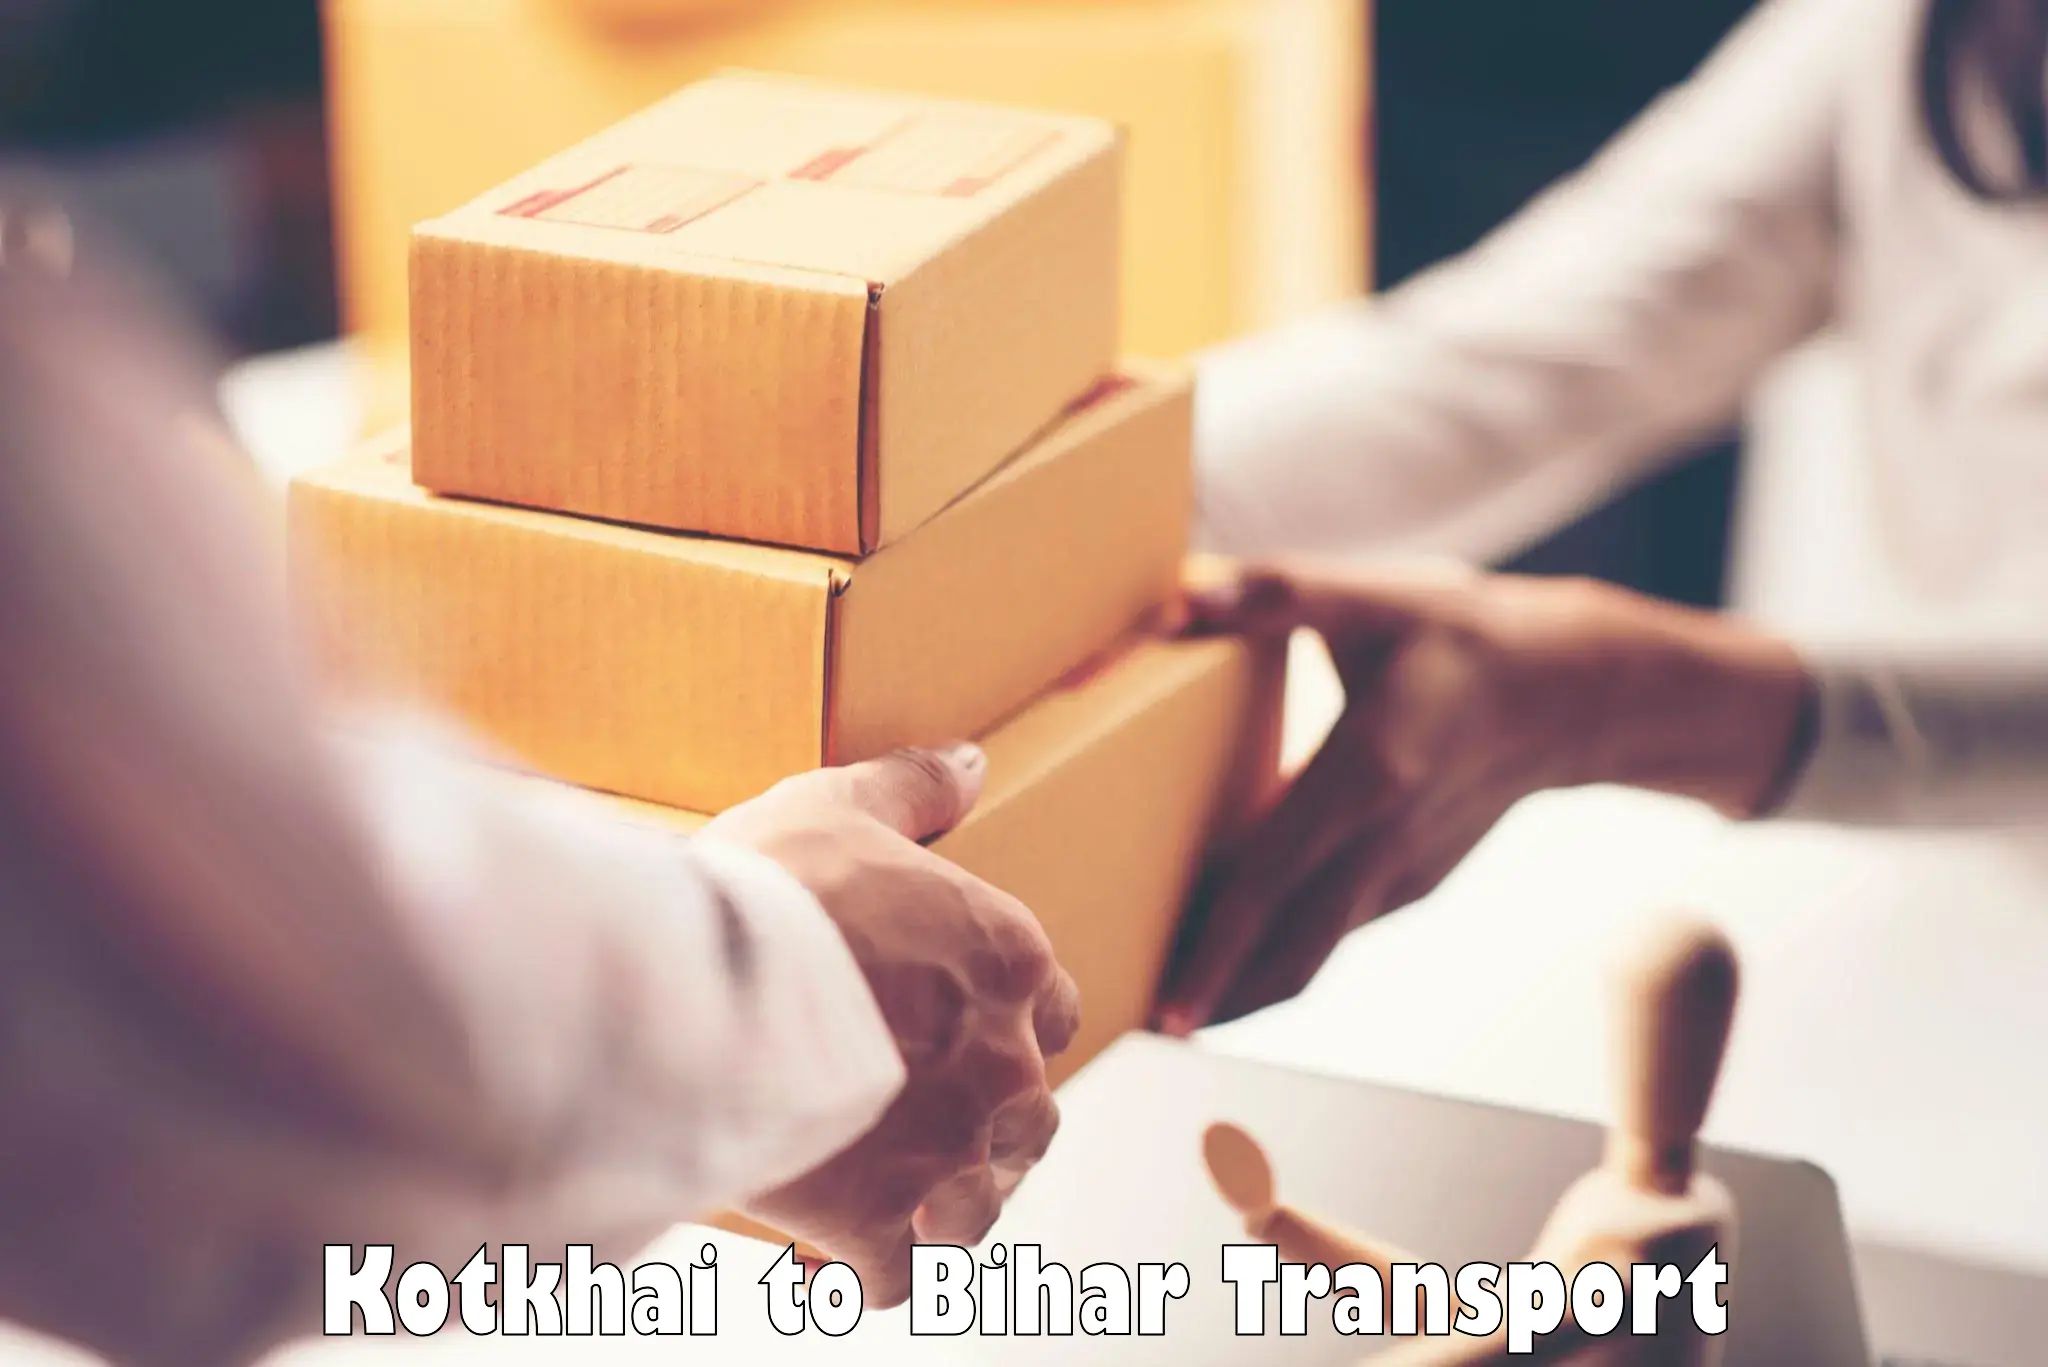 Pick up transport service Kotkhai to Patna